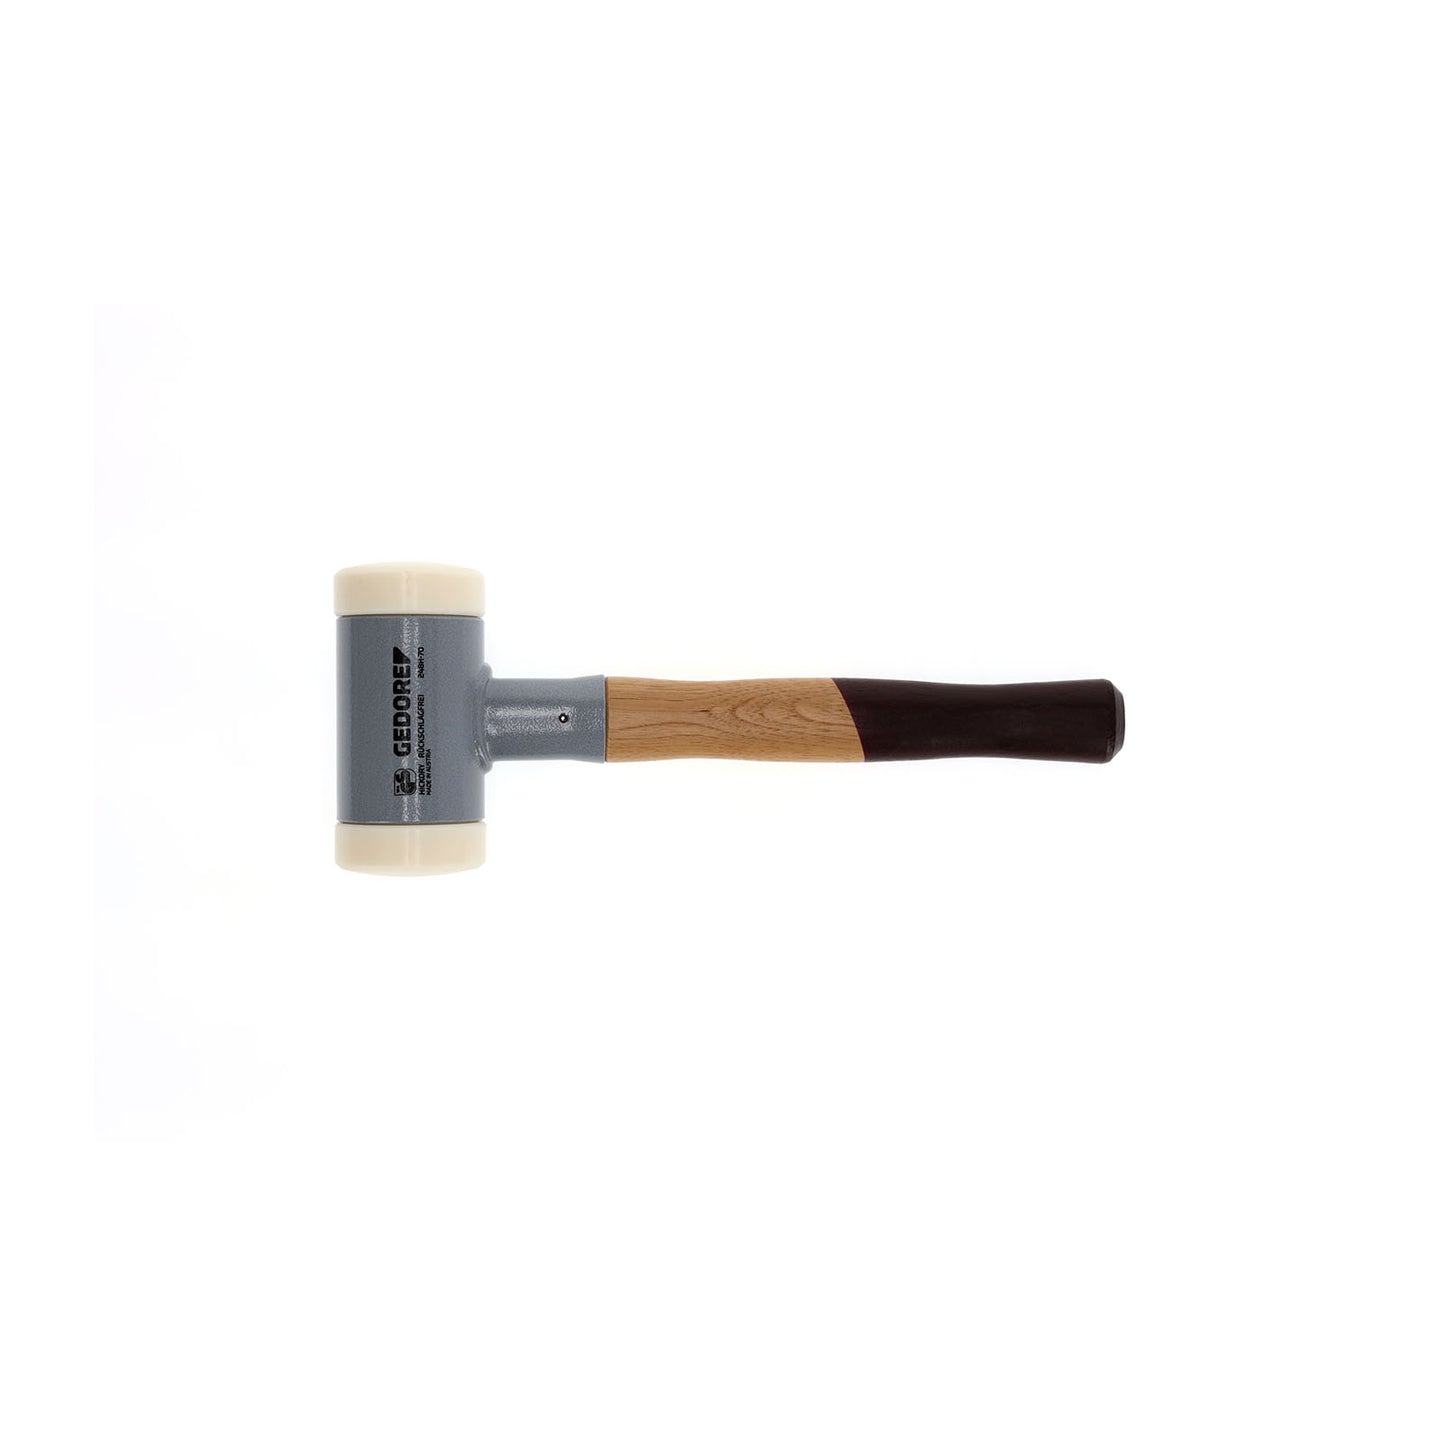 GEDORE 248 H-70 - Anti-rebound hammer d 70 mm (8728300)